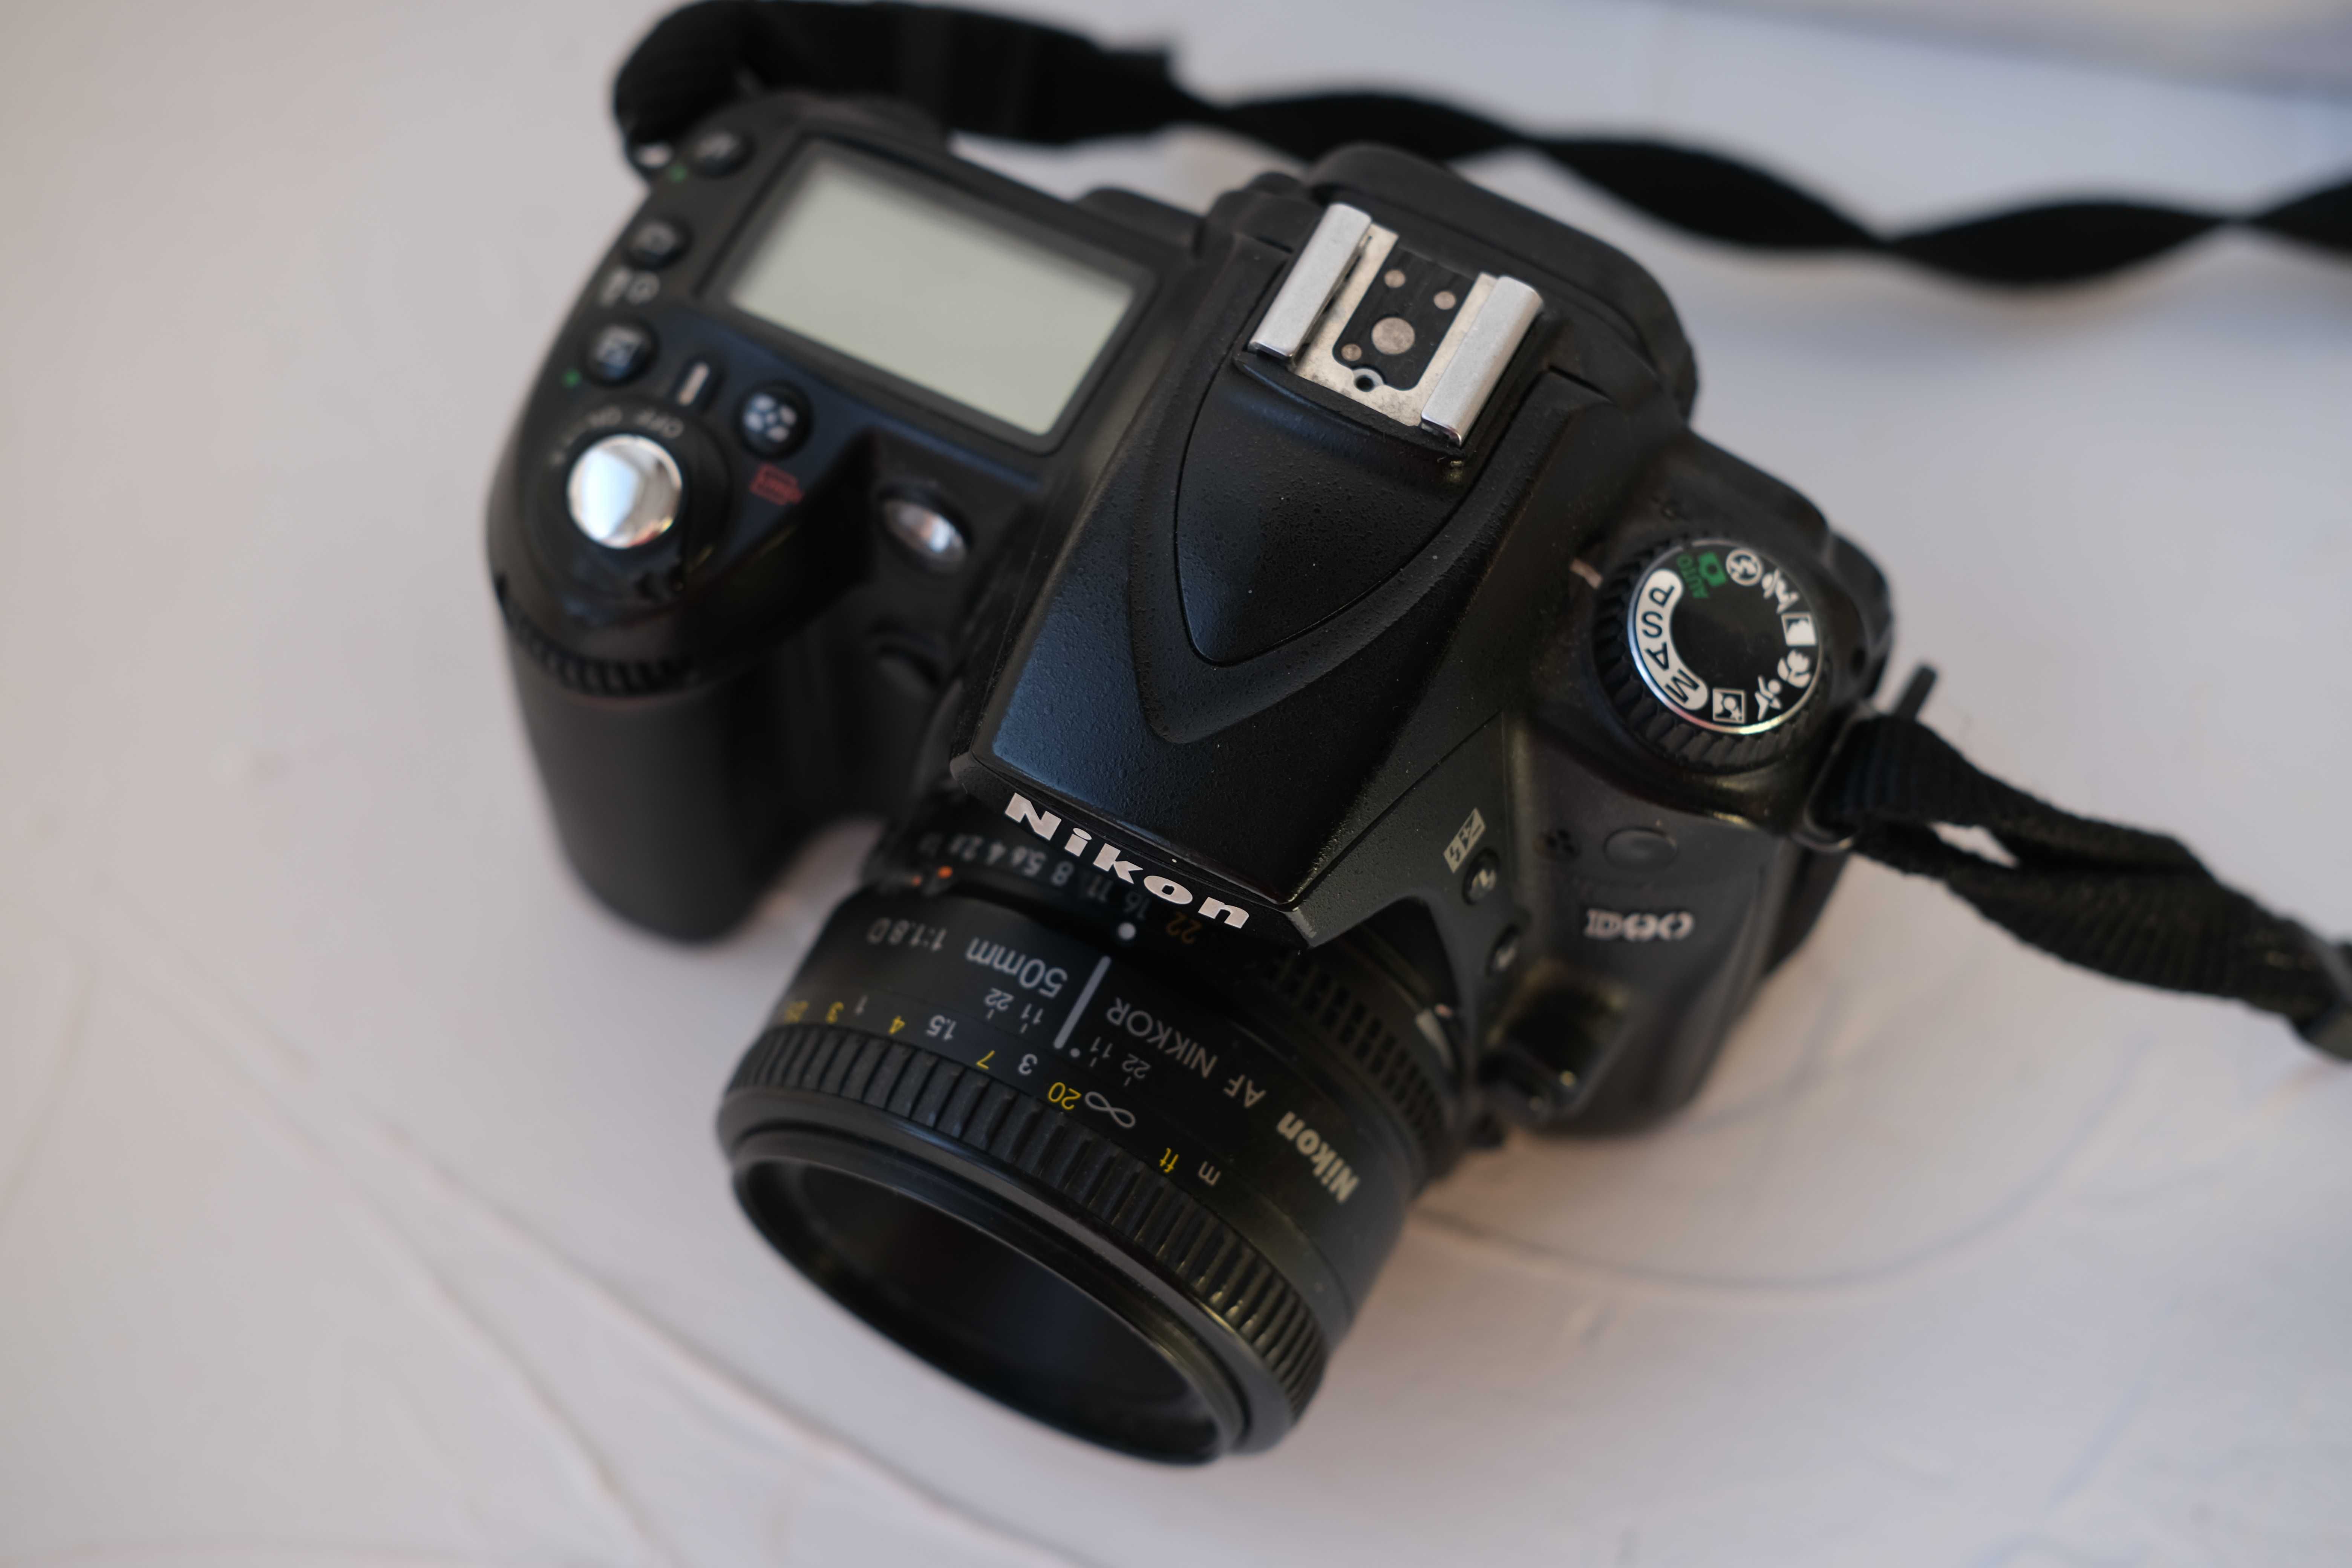 Nikon D90 + Nikkor 18-55mm + Nikkor 50mm 1.8